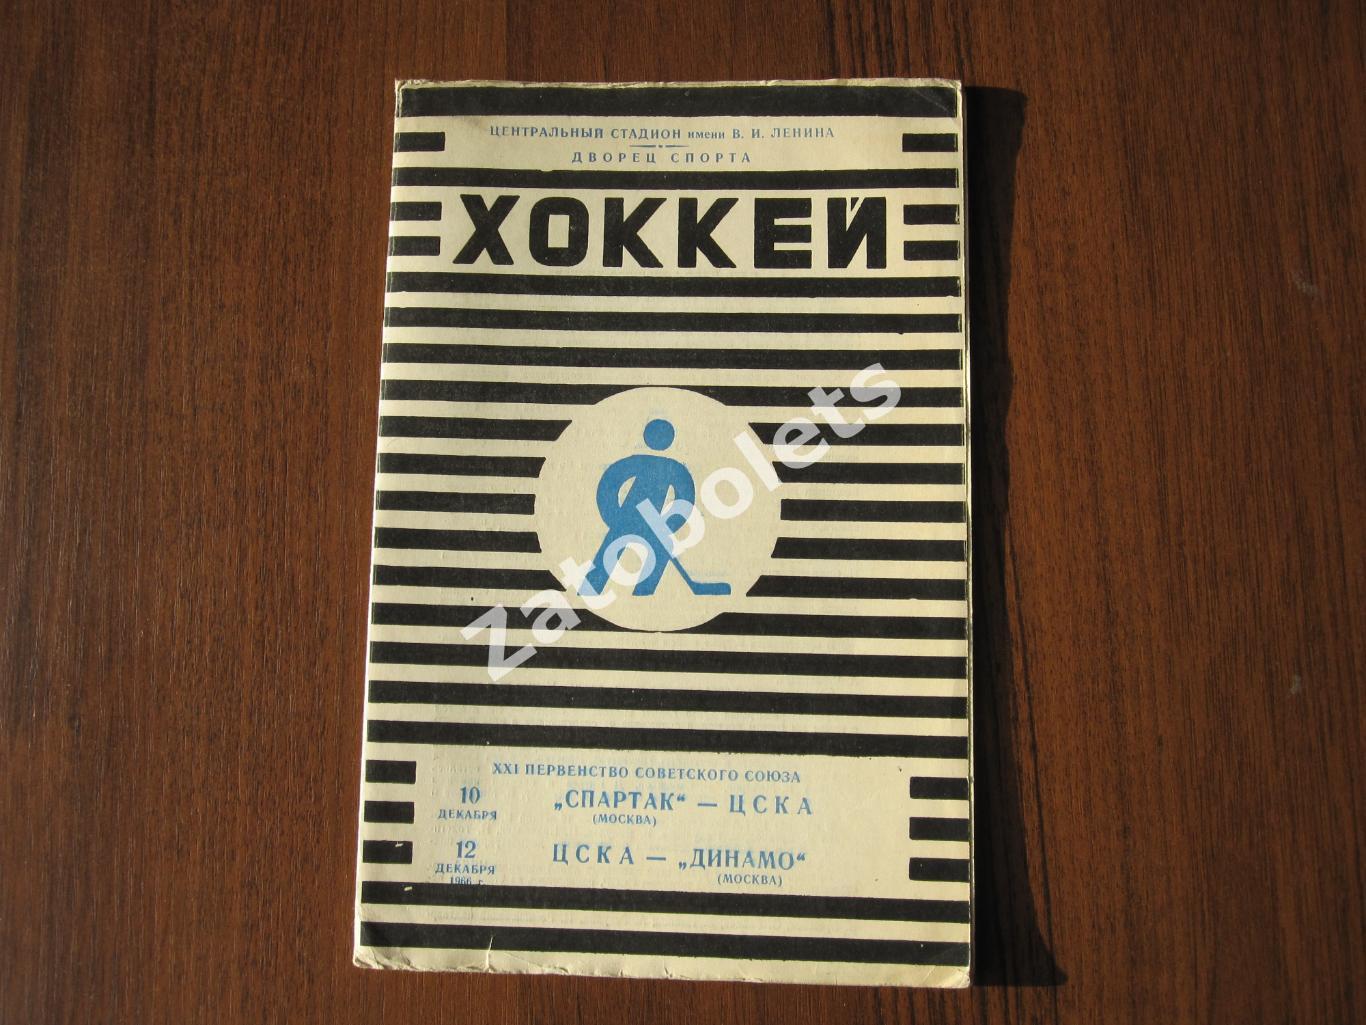 Спартак Москва - ЦСКА / ЦСКА - Динамо Москва 10-12.12.1966